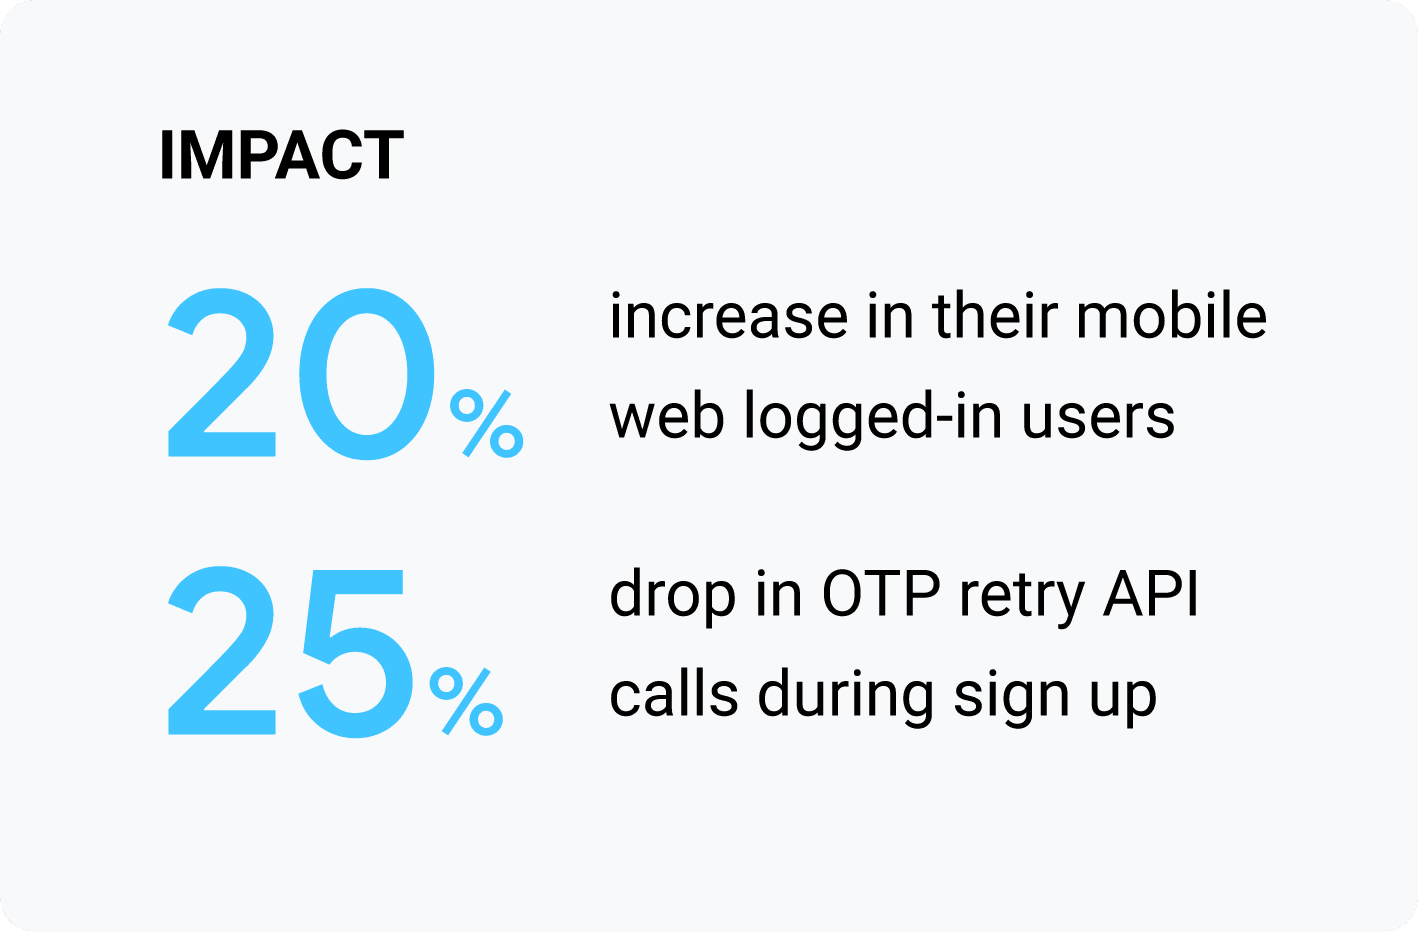 Auswirkungen: 20% mehr angemeldete Nutzer im mobilen Web; 25% weniger OTP-Aufrufe mit Wiederholungs-API-Aufrufen während der Registrierung.